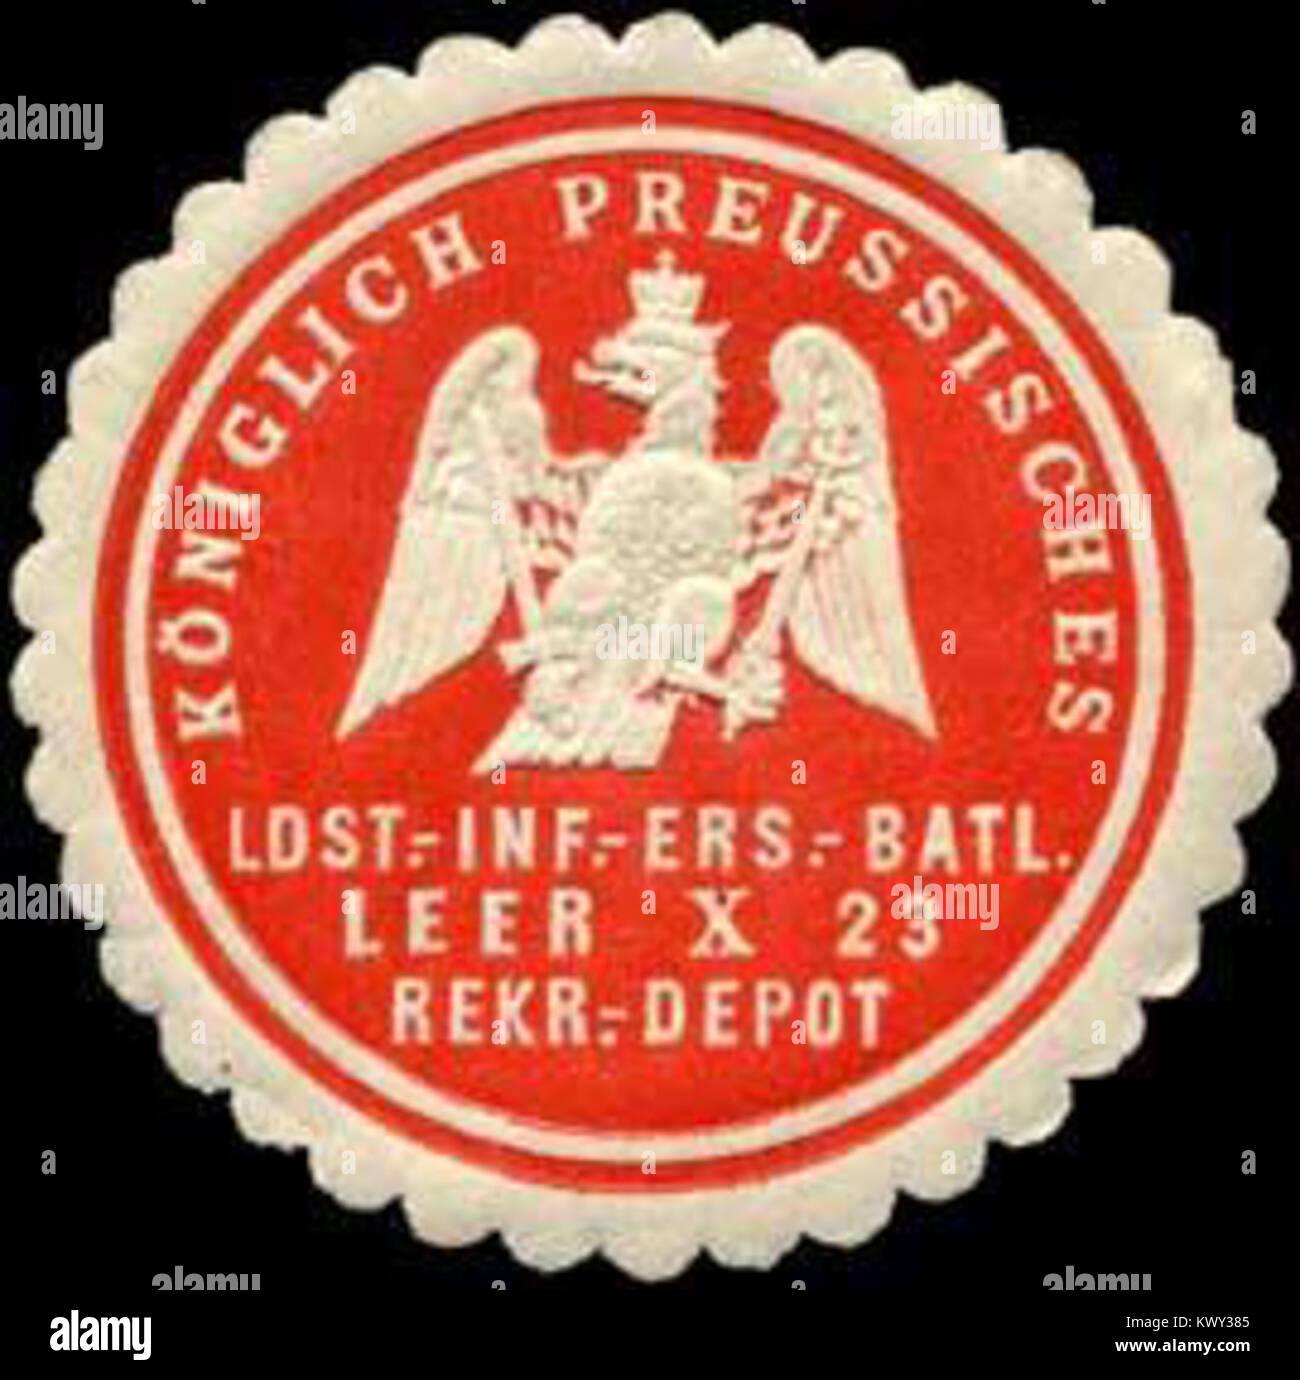 Siegelmarke Königlich Preussisches Ldst. - Infanterie - Ersatz-Bataillon 880 X 23 - Rekruten - Depot W 0238306 Stockfoto